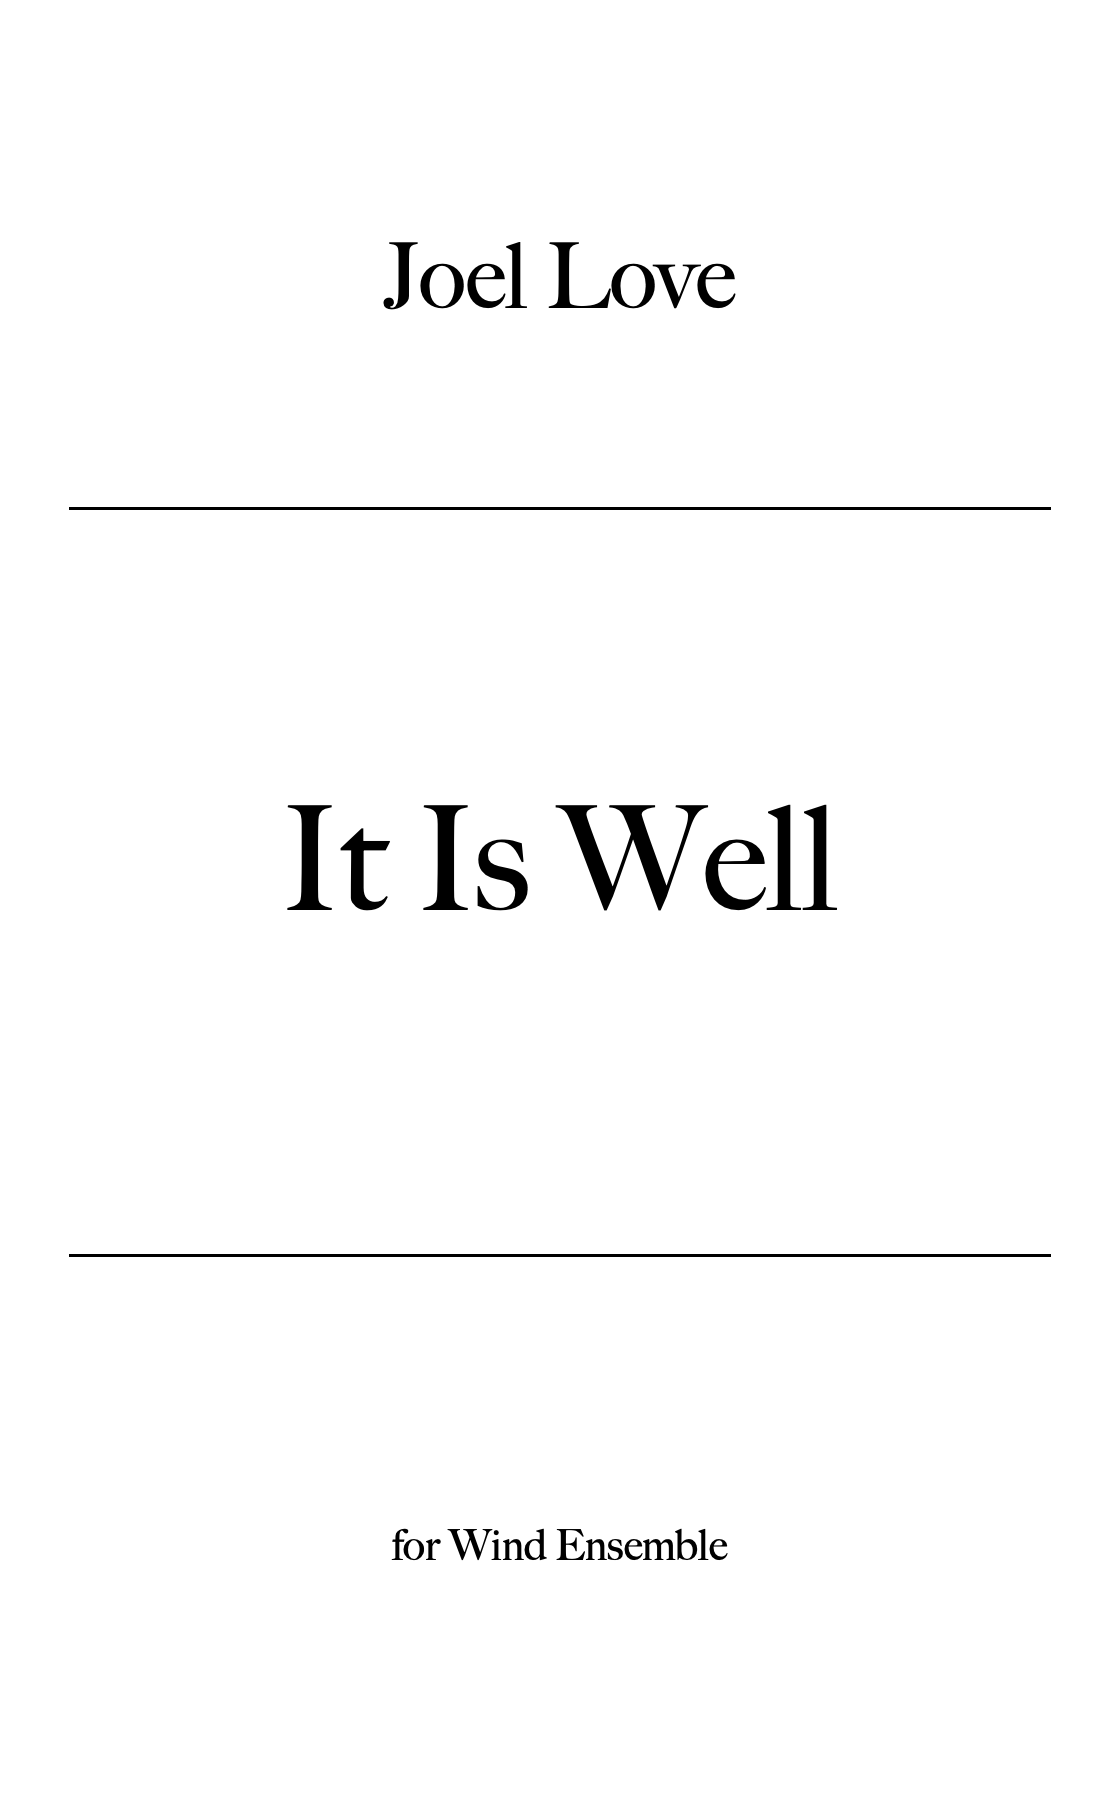 It Is Well by Joel Love